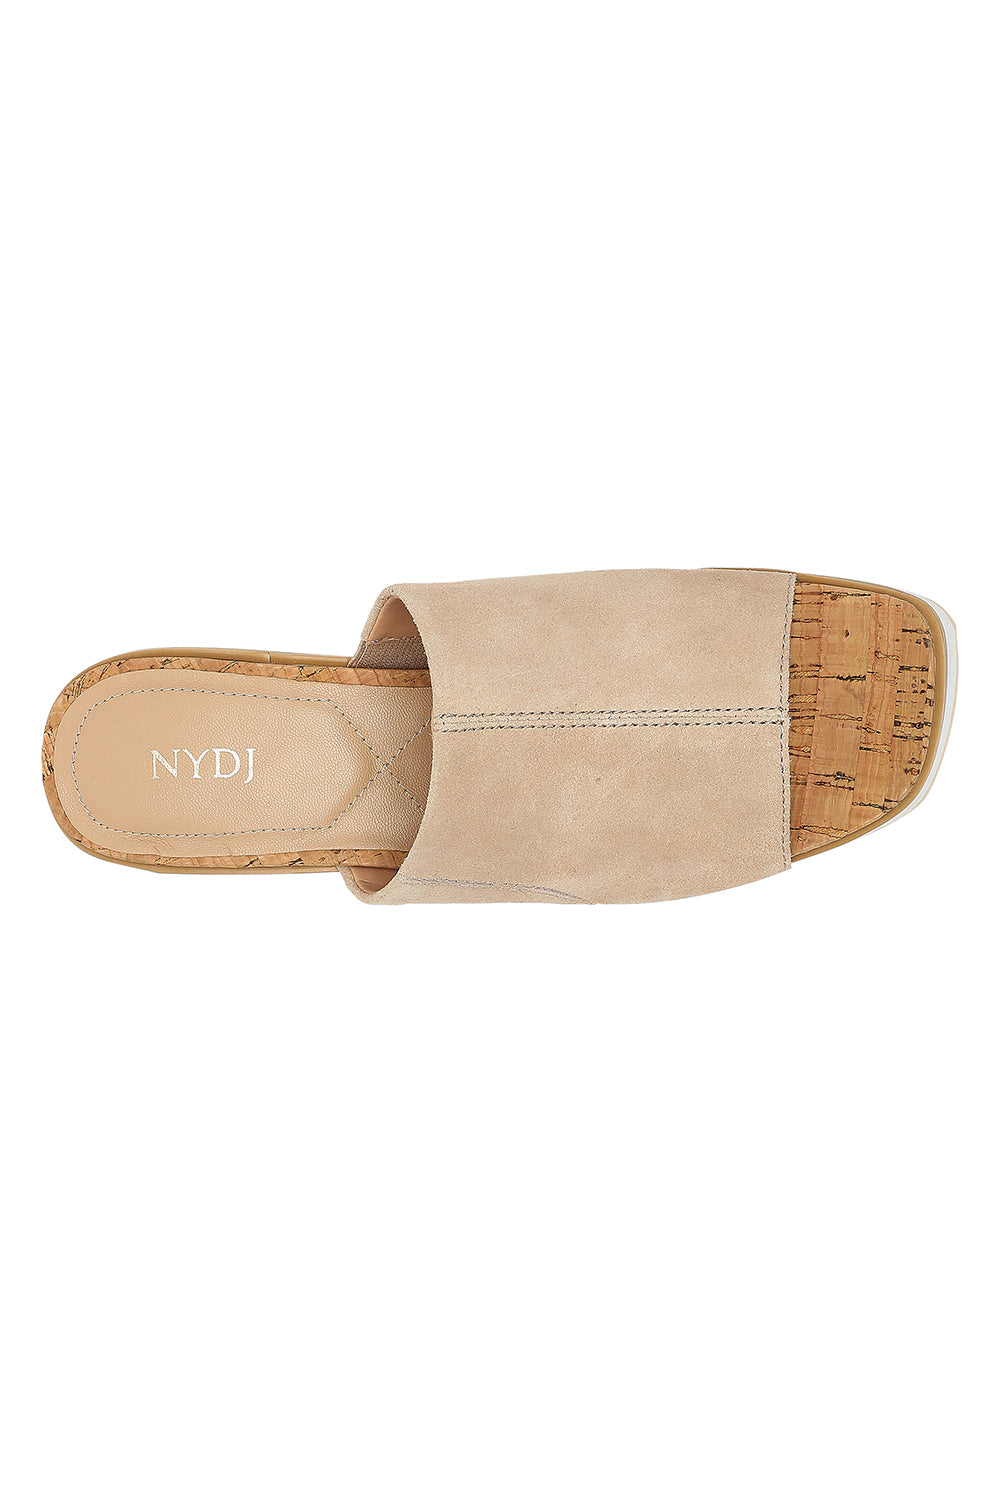 NYDJ Rysa Wedge Sandals In Wide Width In Kid Suede - Sand